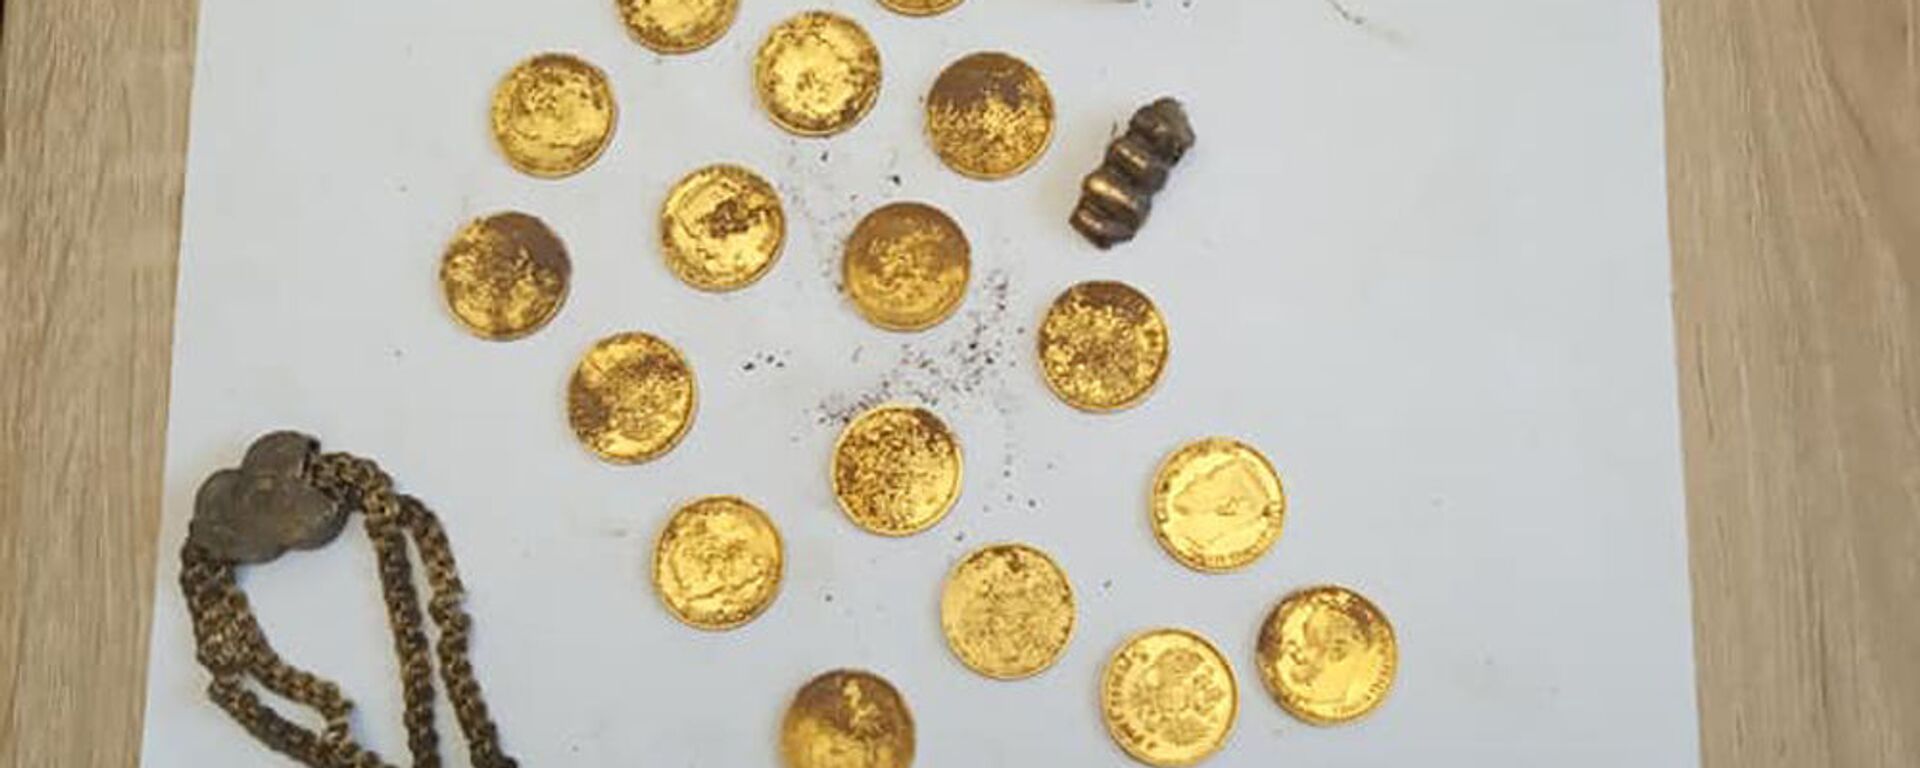 Клад золотых монет найден в центре Минска - Sputnik Беларусь, 1920, 23.02.2021